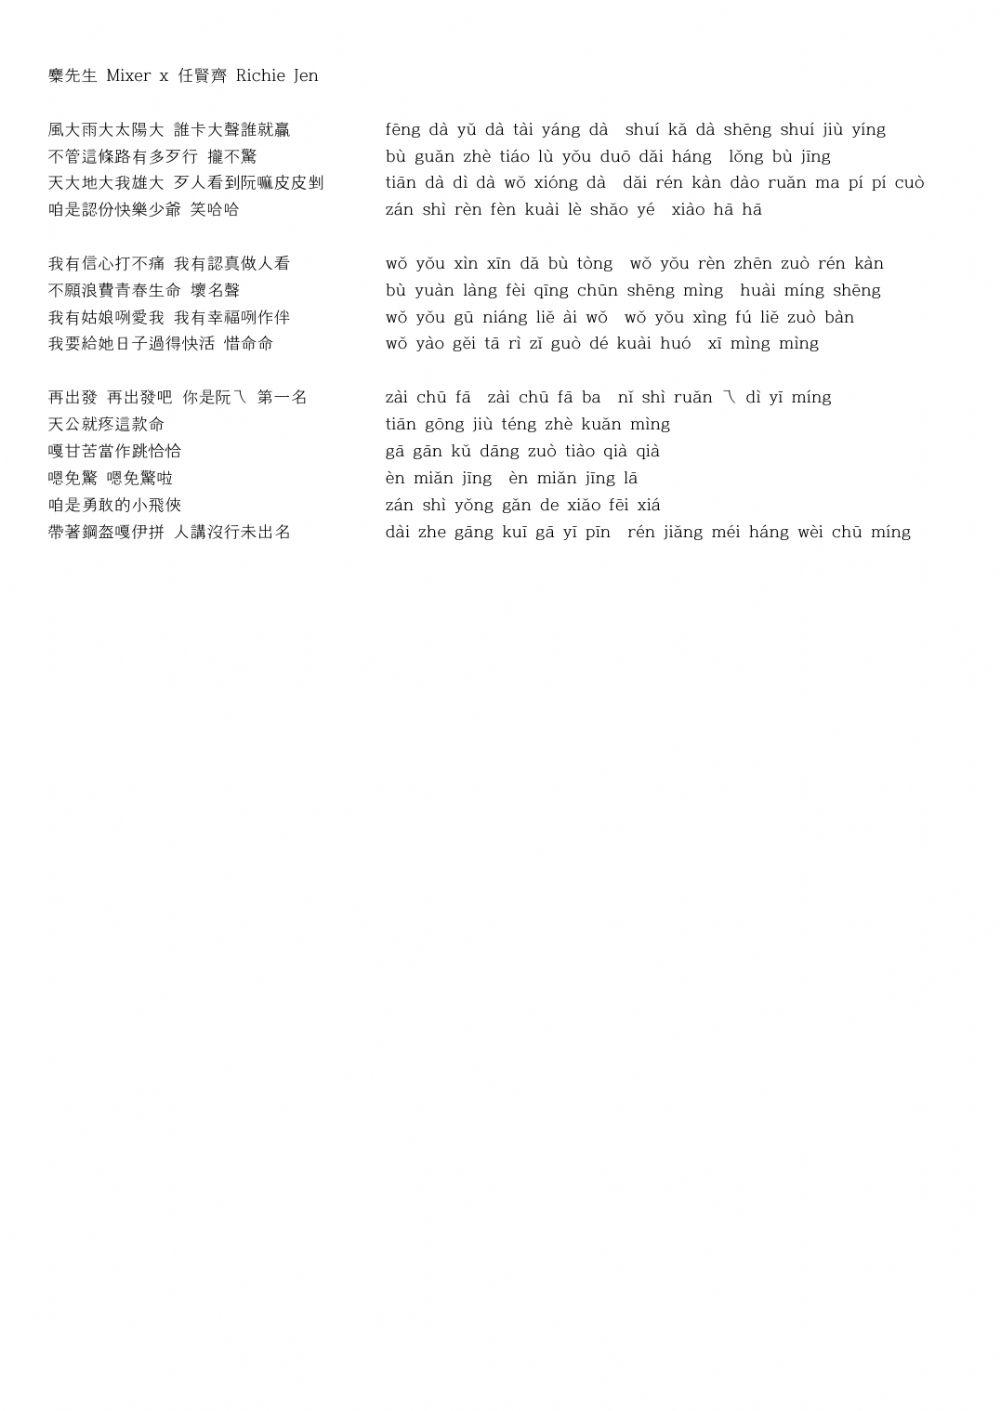 Jrc junir book1-8 (Korean- Chinese)